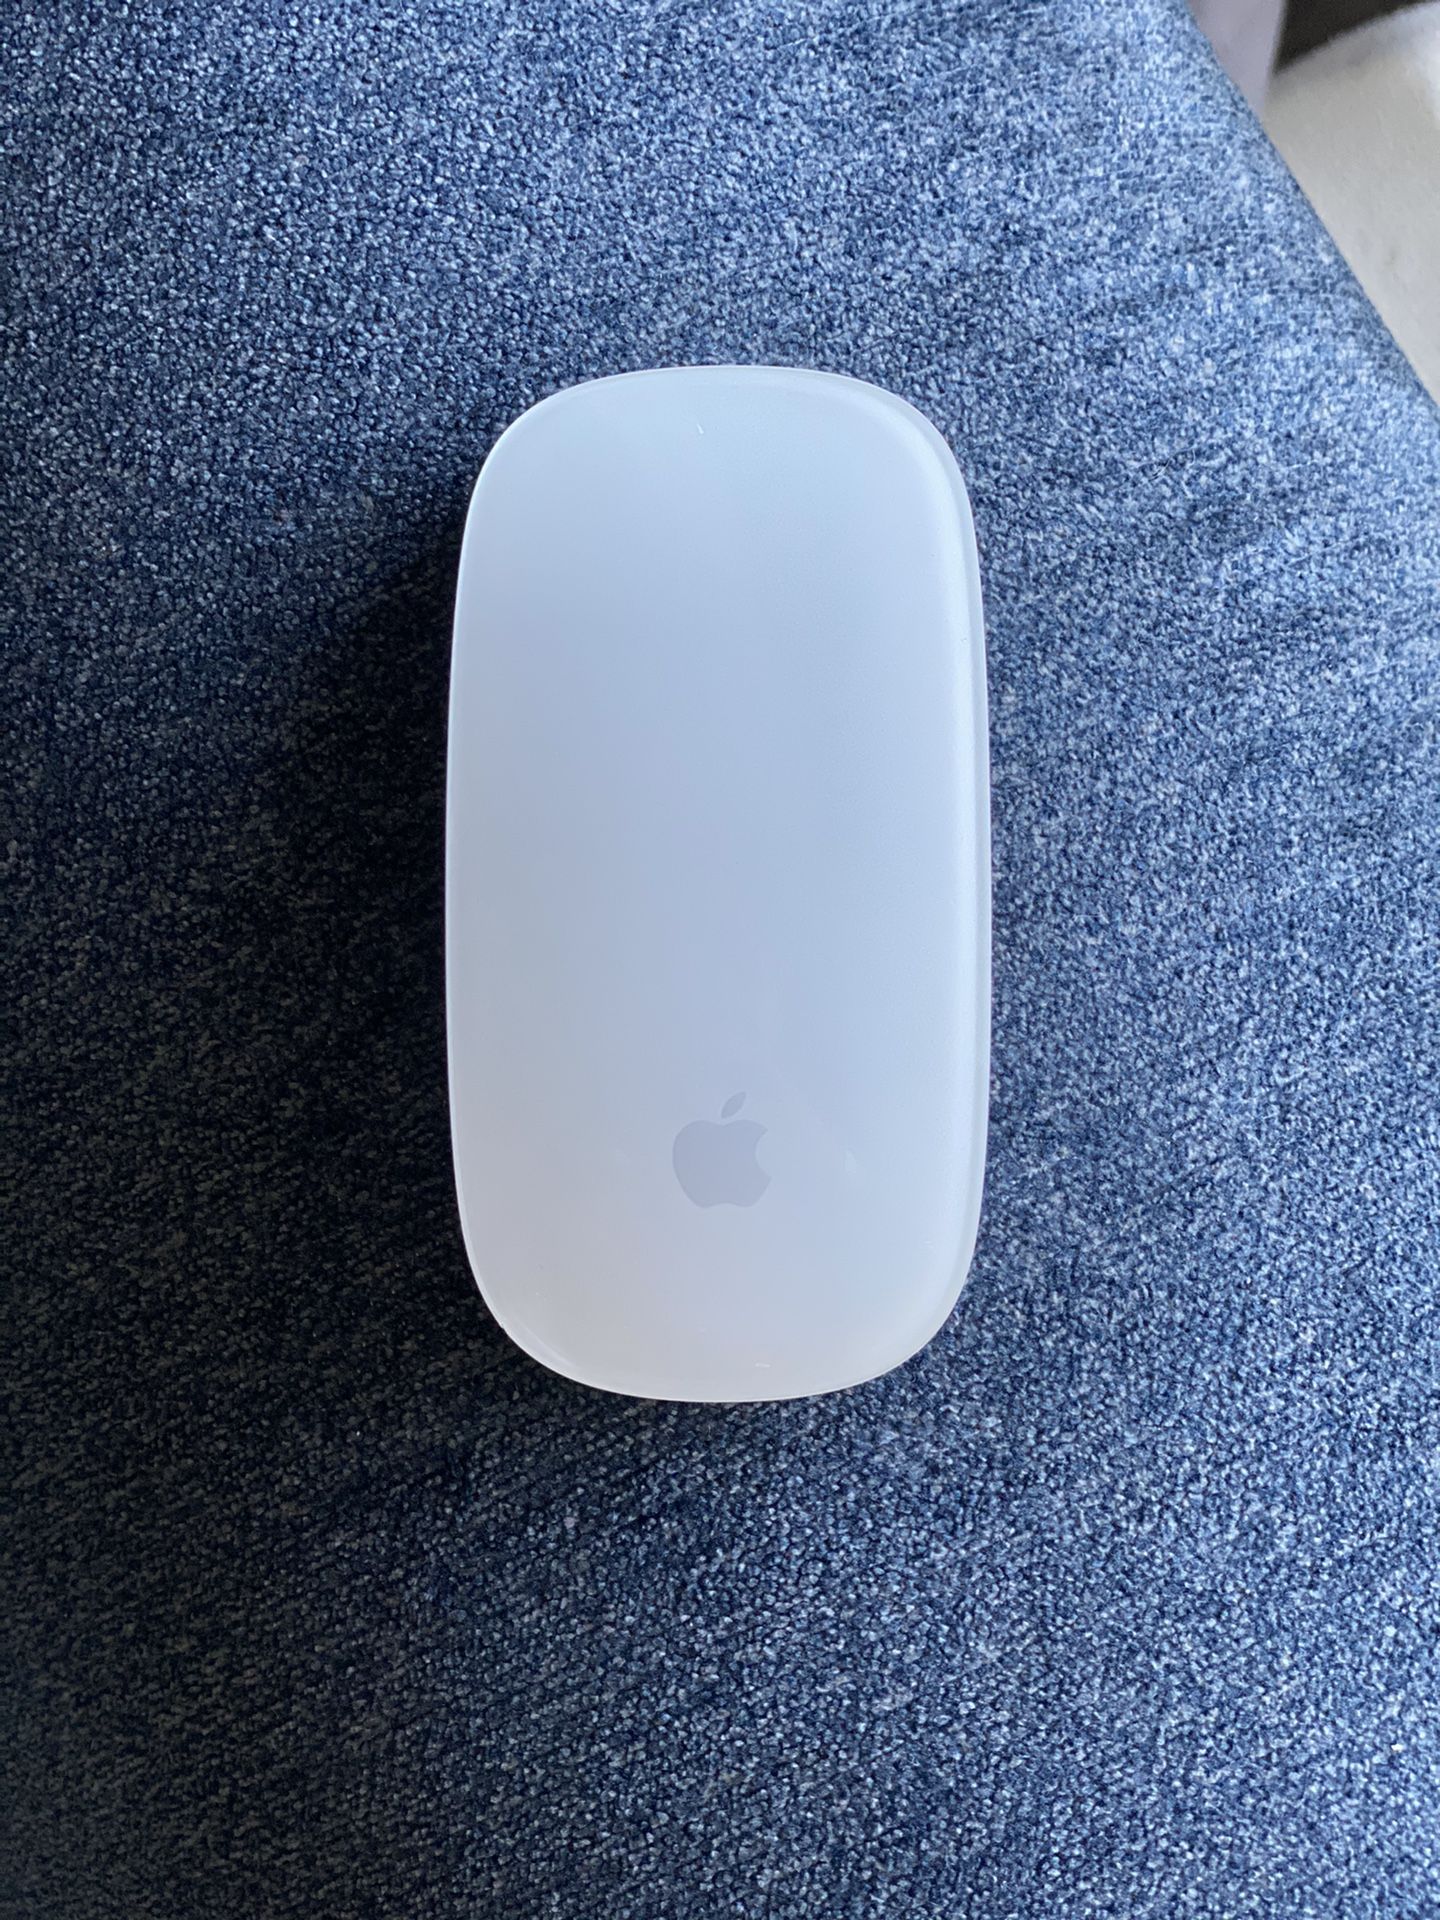 Apple Magic Mouse Gen 1